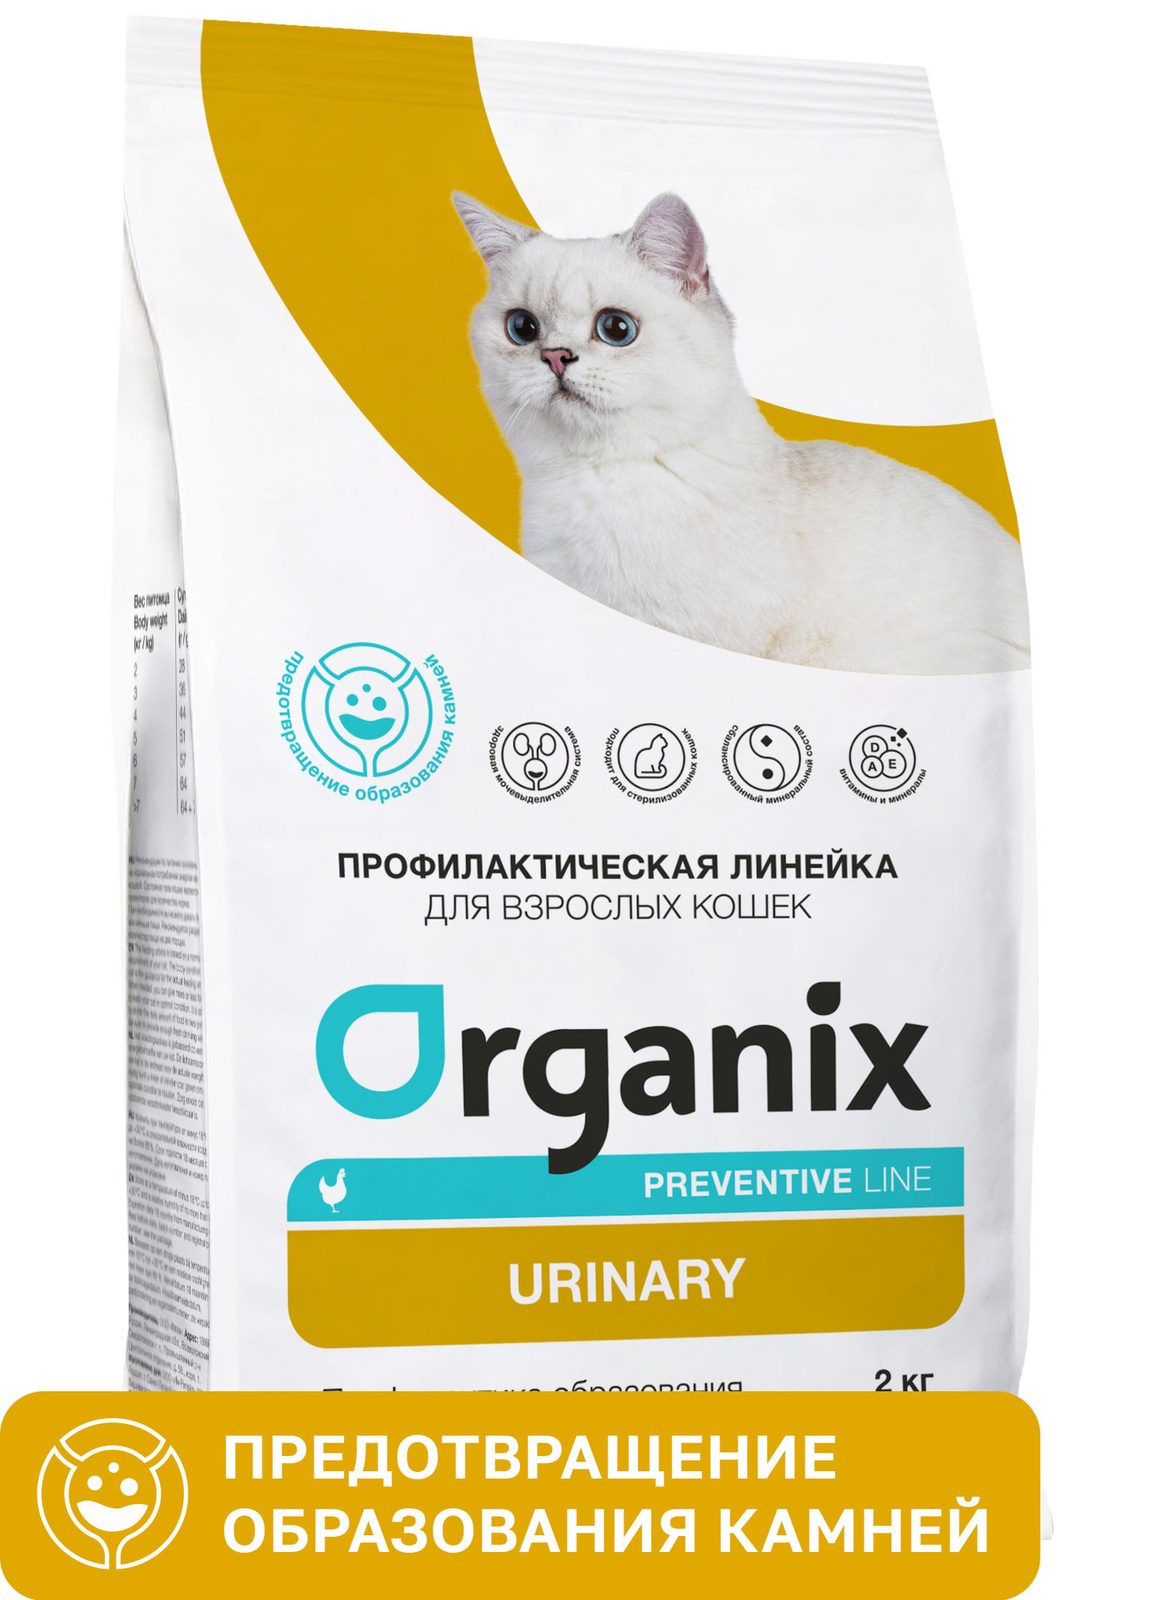 Organix Preventive Line Organix Preventive Line urinary сухой корм для кошек Профилактика образования мочевых камней (600 г) organix organix сухой корм для кошек с курочкой 7 5 кг